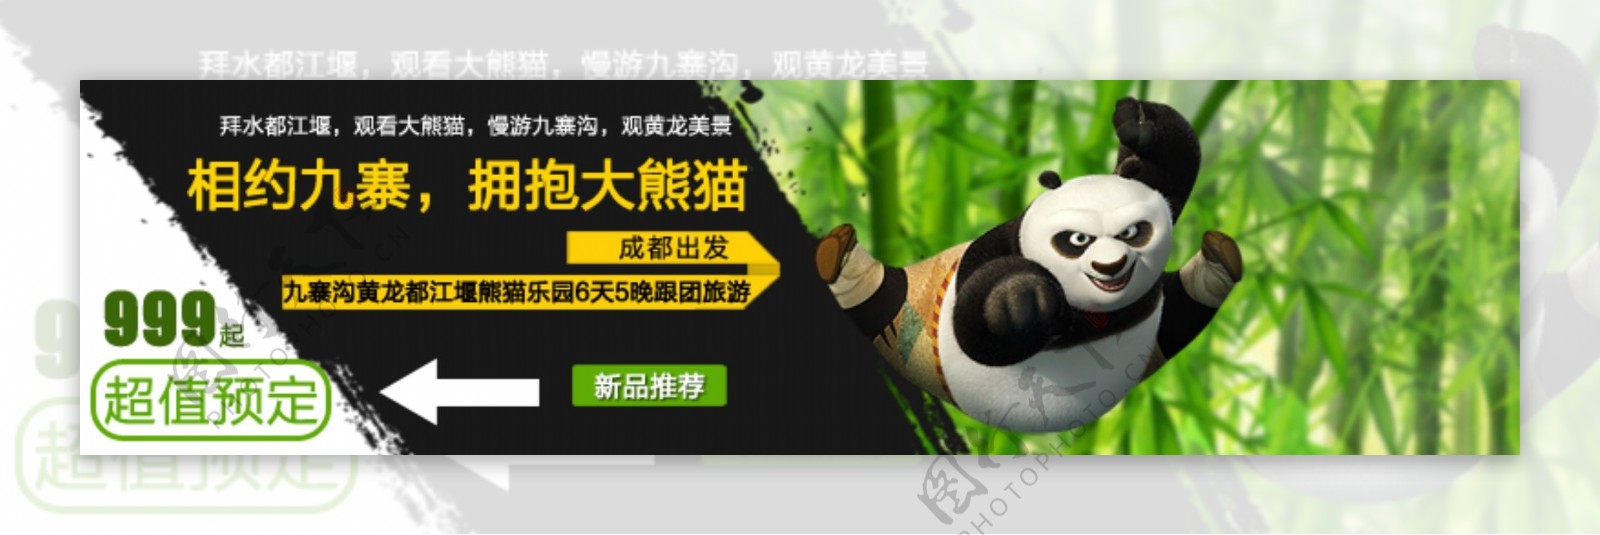 九寨沟熊猫乐园旅游淘宝关联链接图片